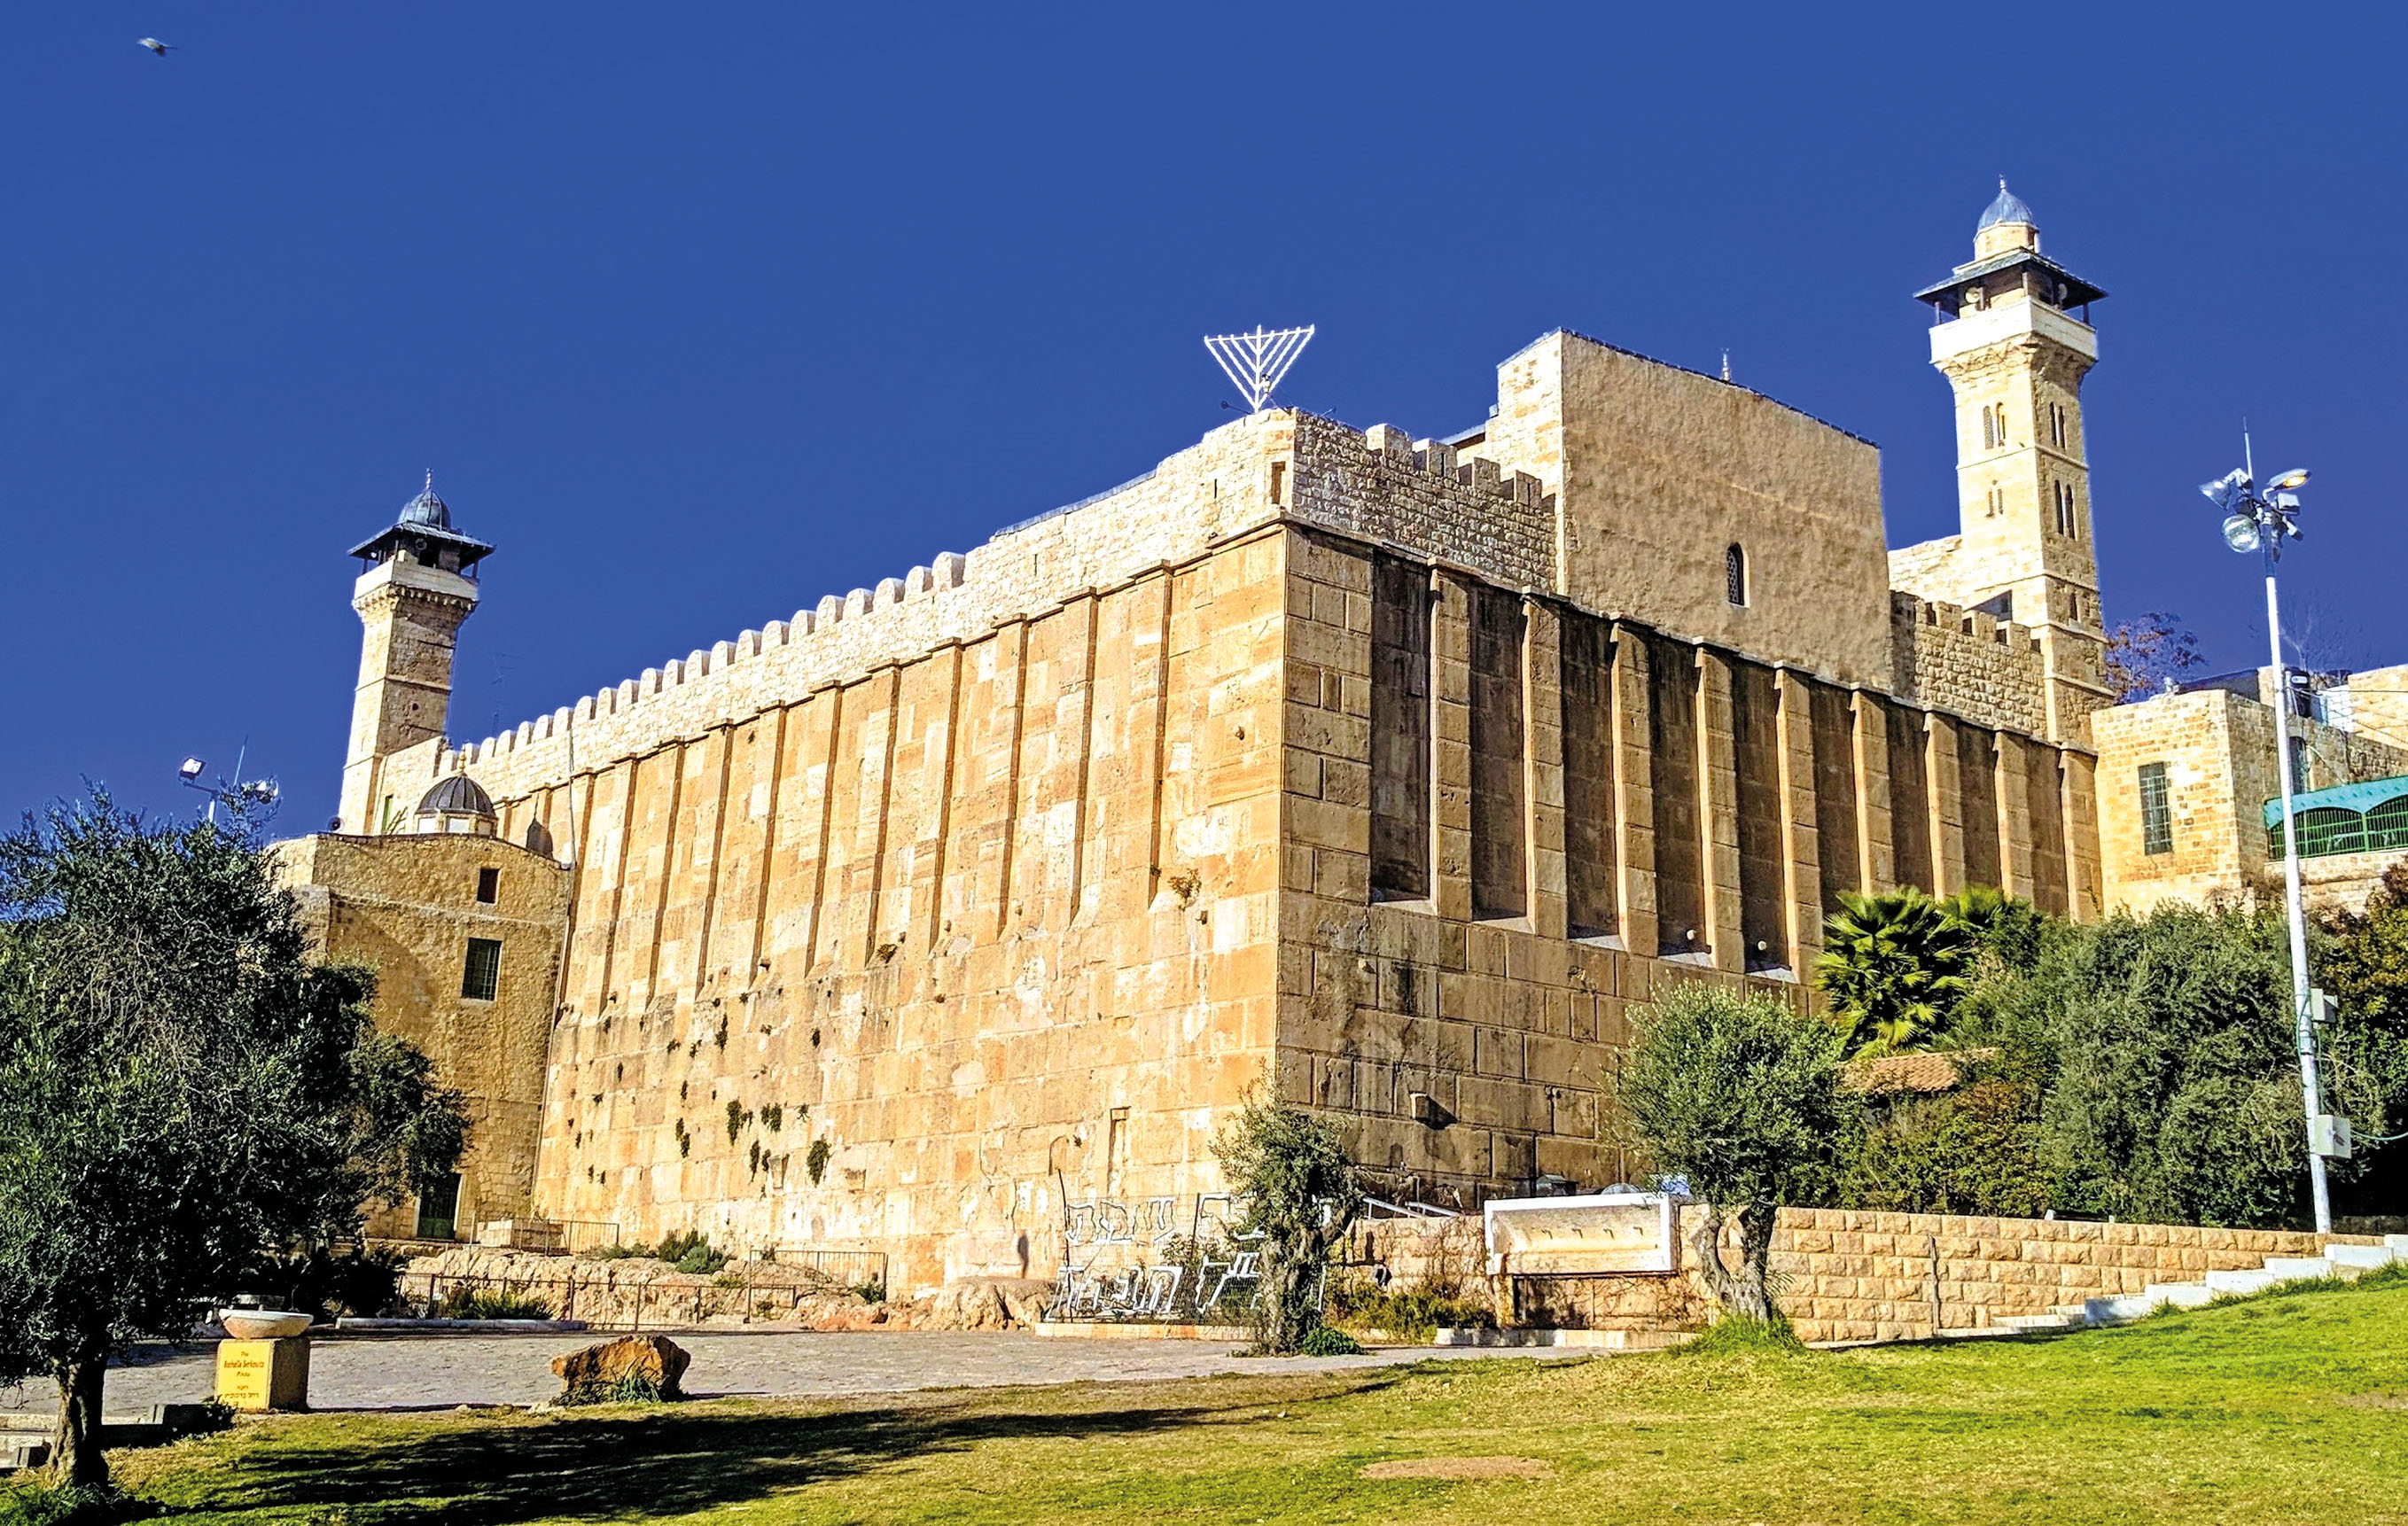 De Grot van de Patriarchen, het Heiligdom van Abraham, is een groep grotten in het midden van het oude centrum van Hebron. Boven de grotten staat een rechthoekig gebouw uit de periode van Herodes de Grote.